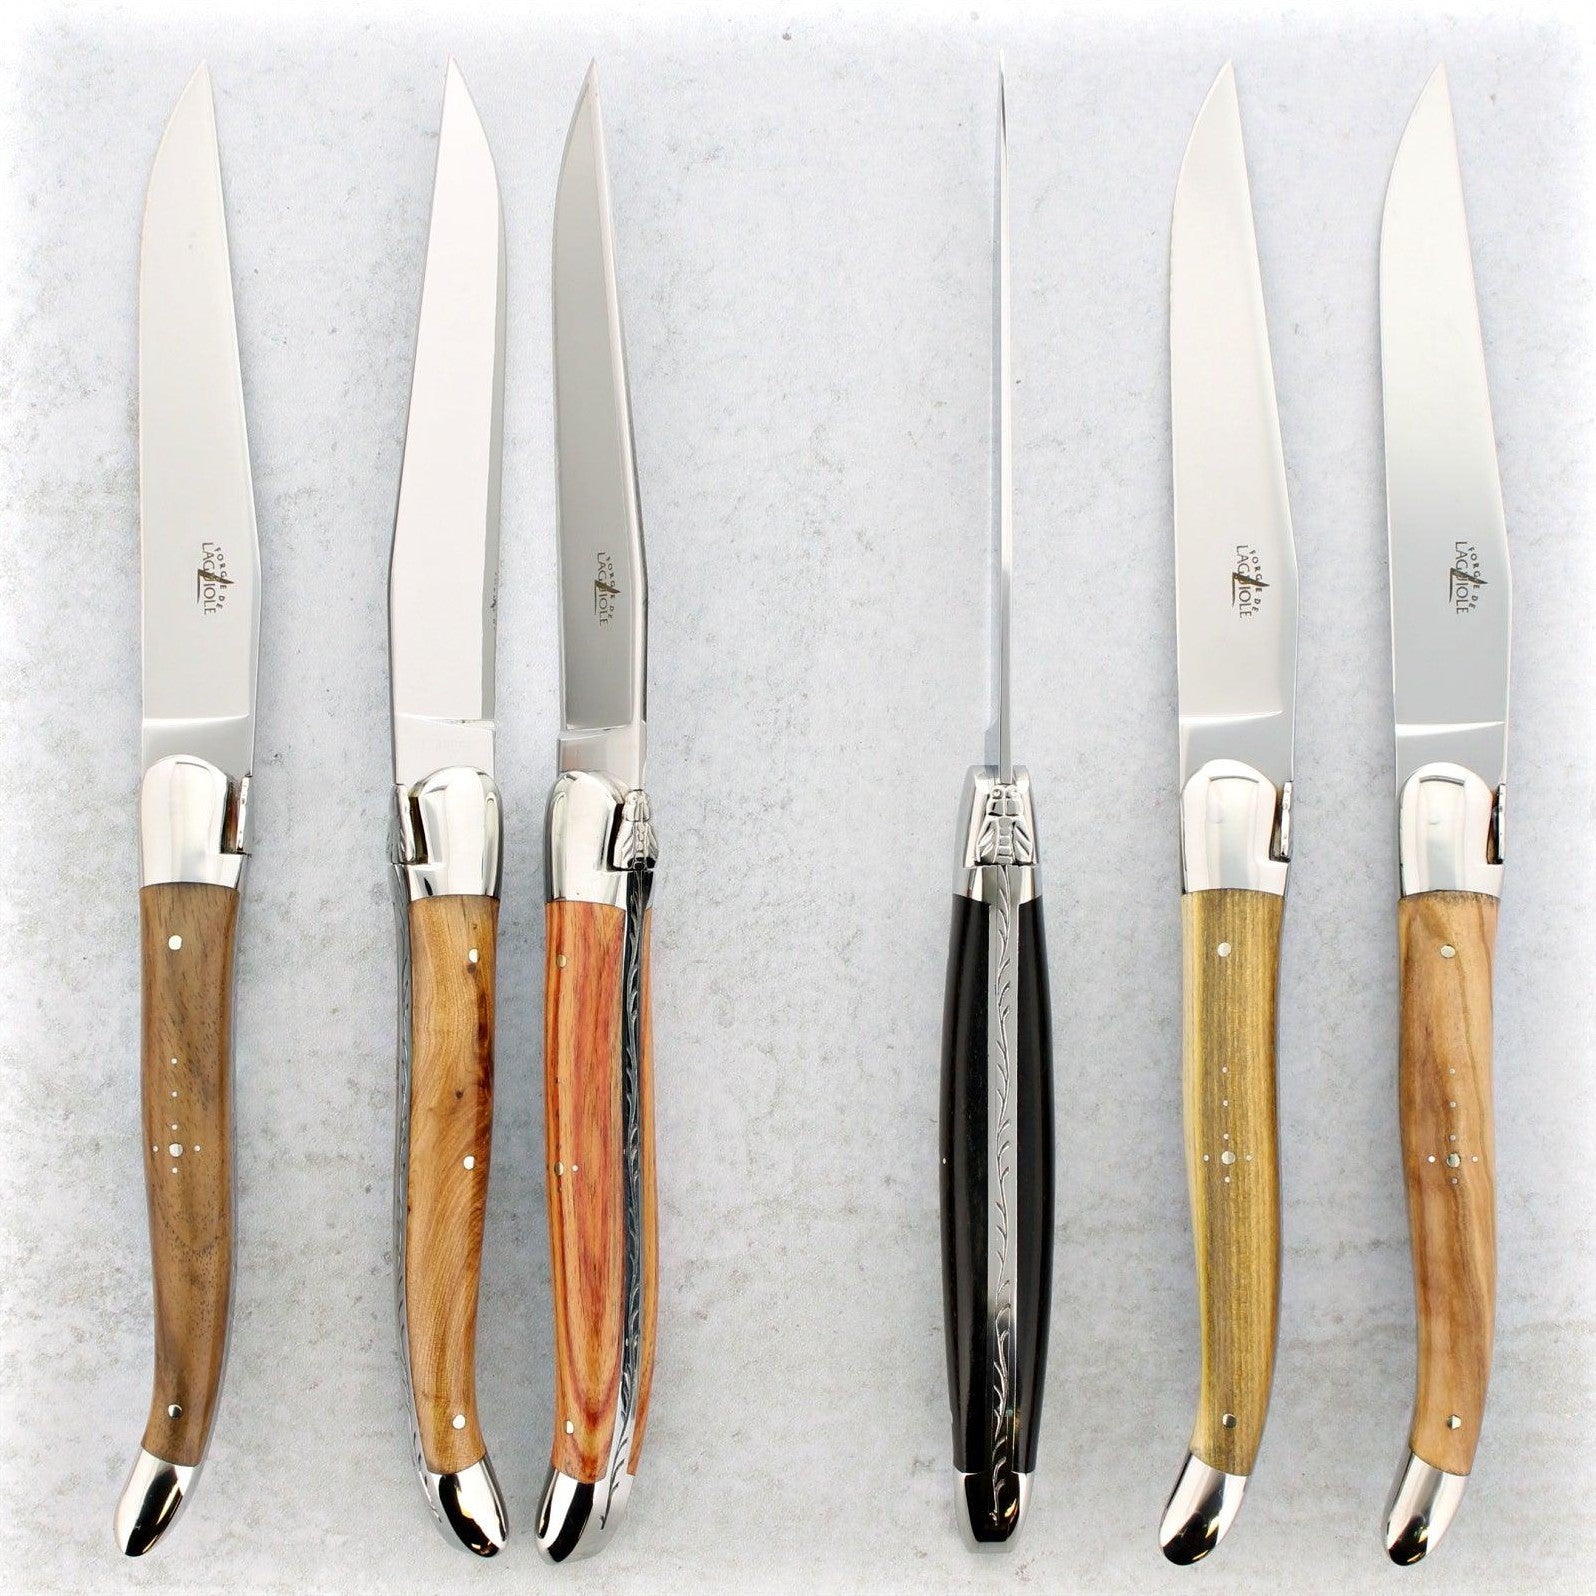 https://www.laguiole-imports.com/cdn/shop/products/Forge-de-Laguiole-Assorted-Steak-Knives-Shiny-Forge-de-Laguiole.jpg?v=1674998891